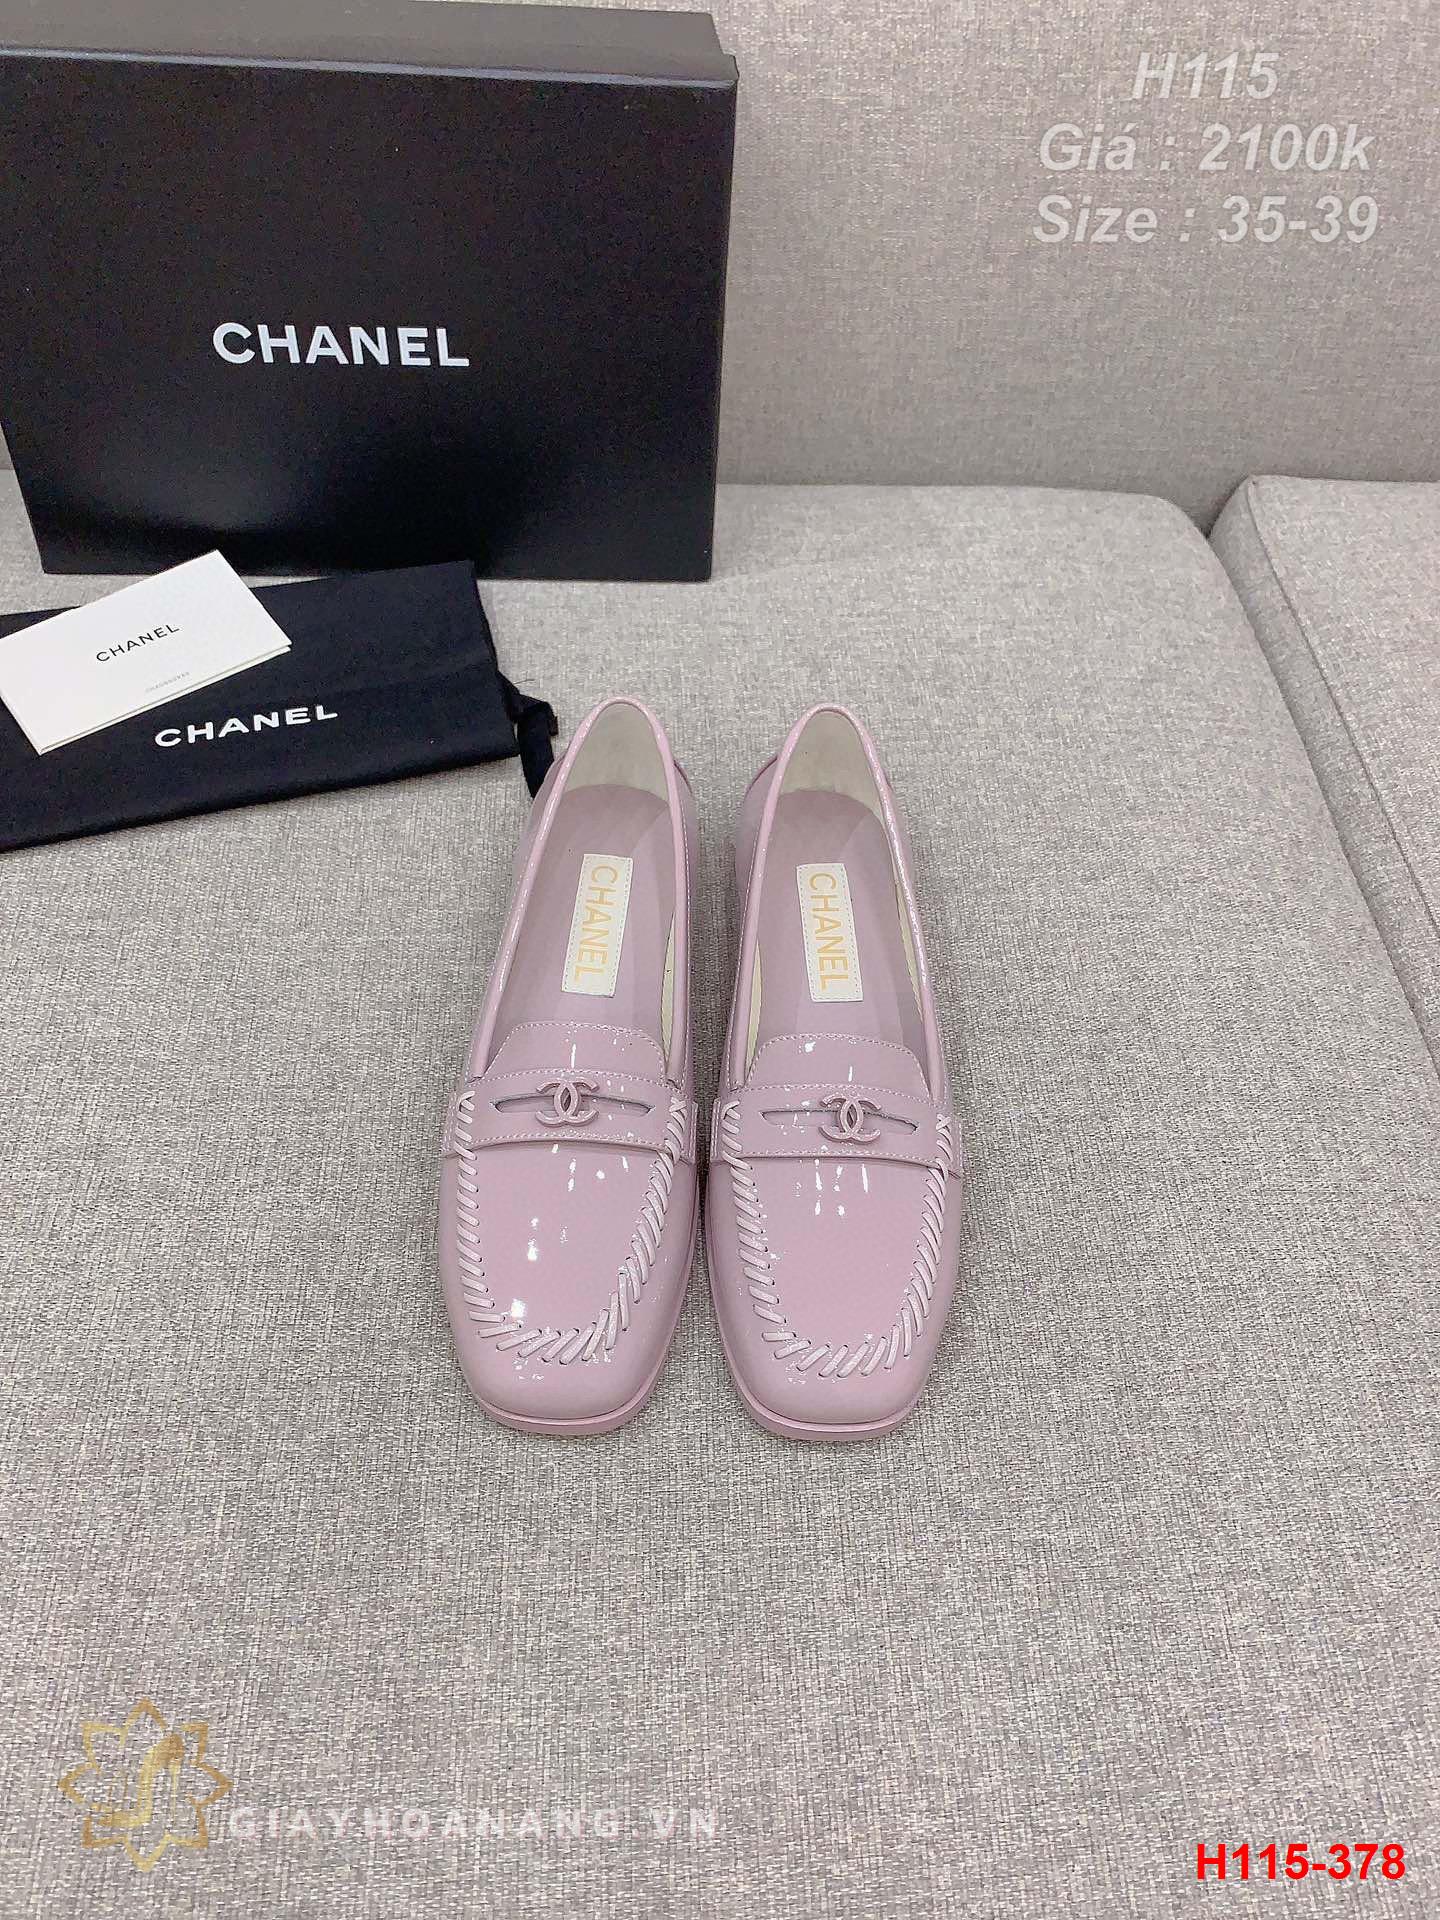 H115-378 Chanel giày lười siêu cấp